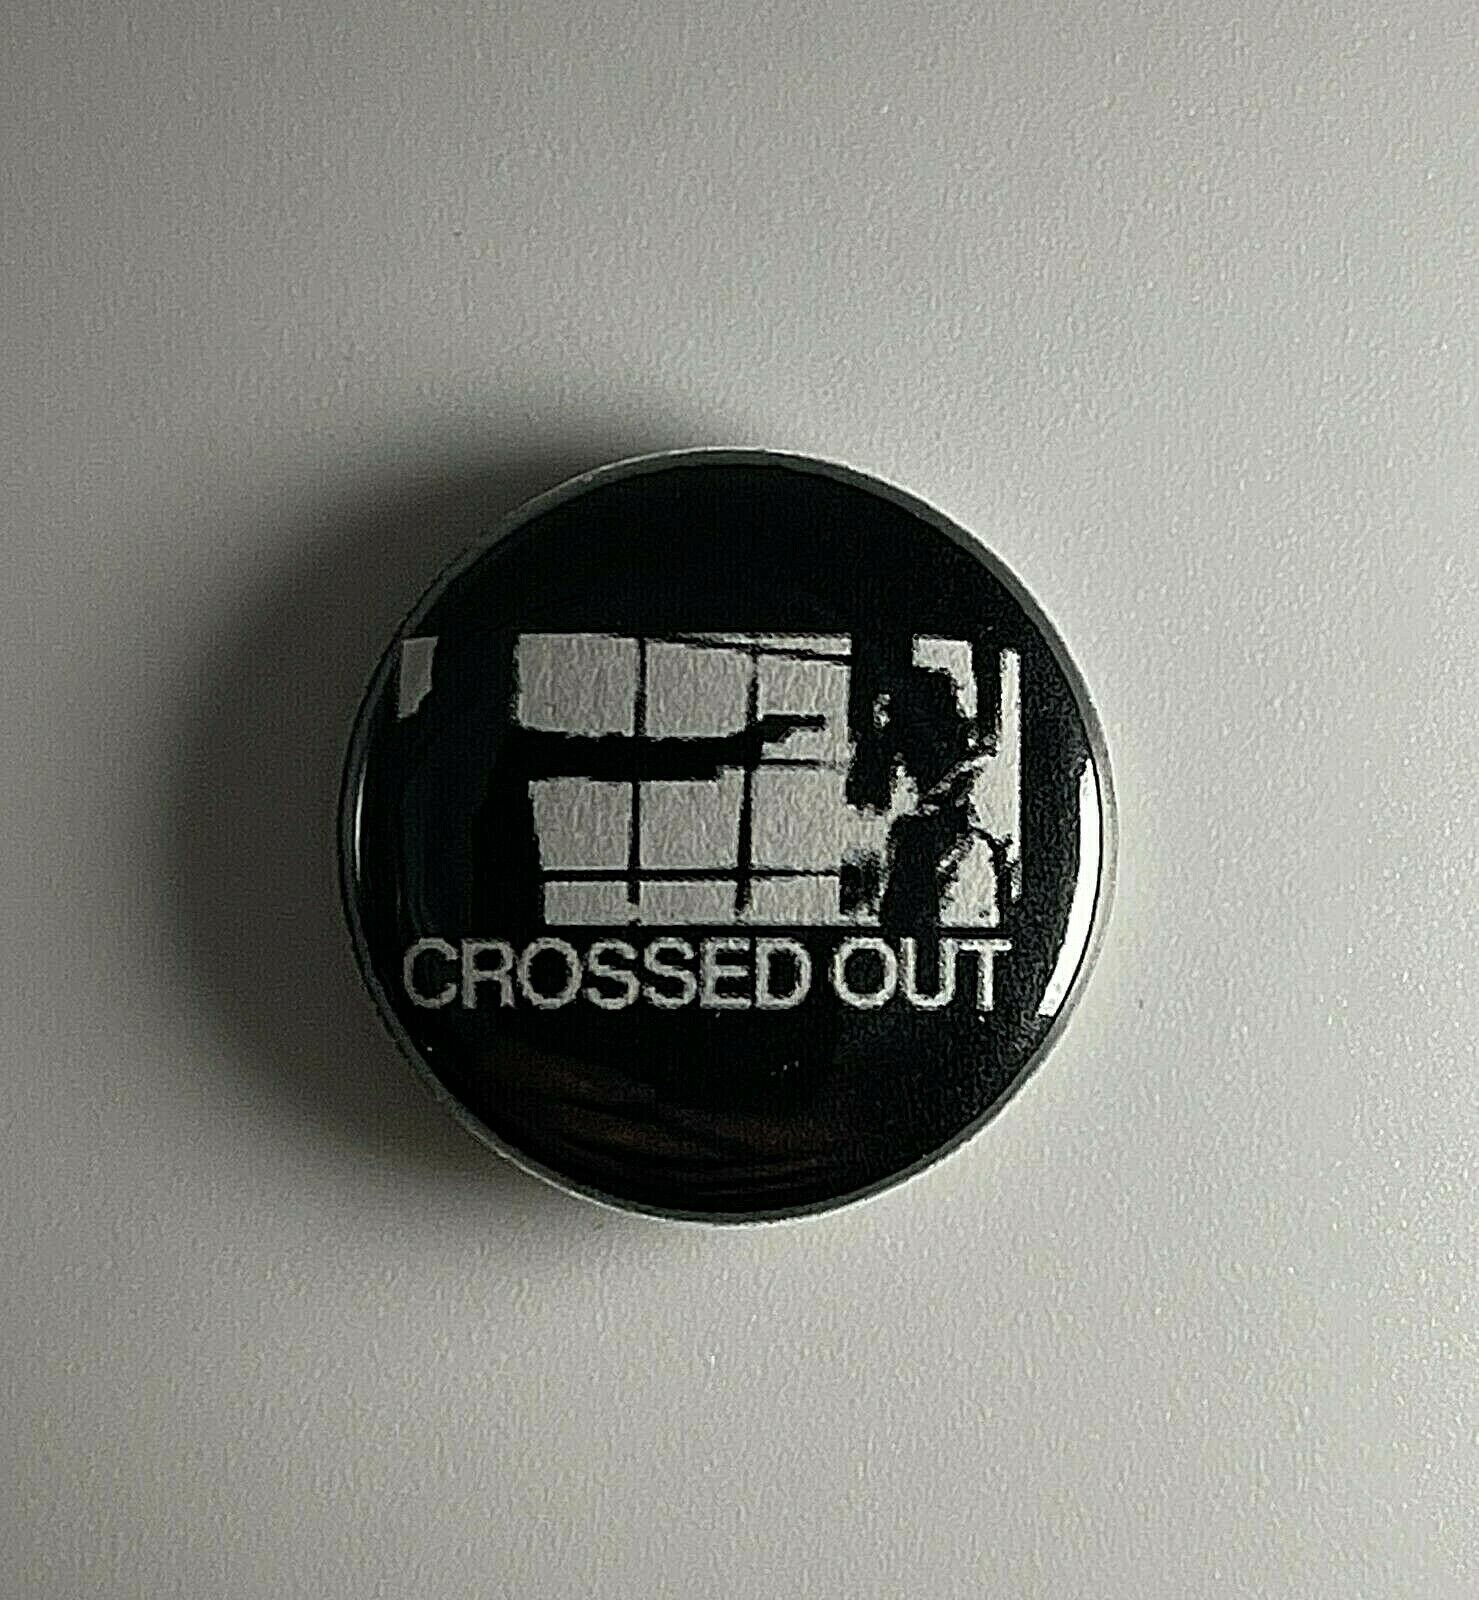 Crossed Out Power Gewalt 2, 5 cm Button C008B Badge Pin von Heavylowmerchandise